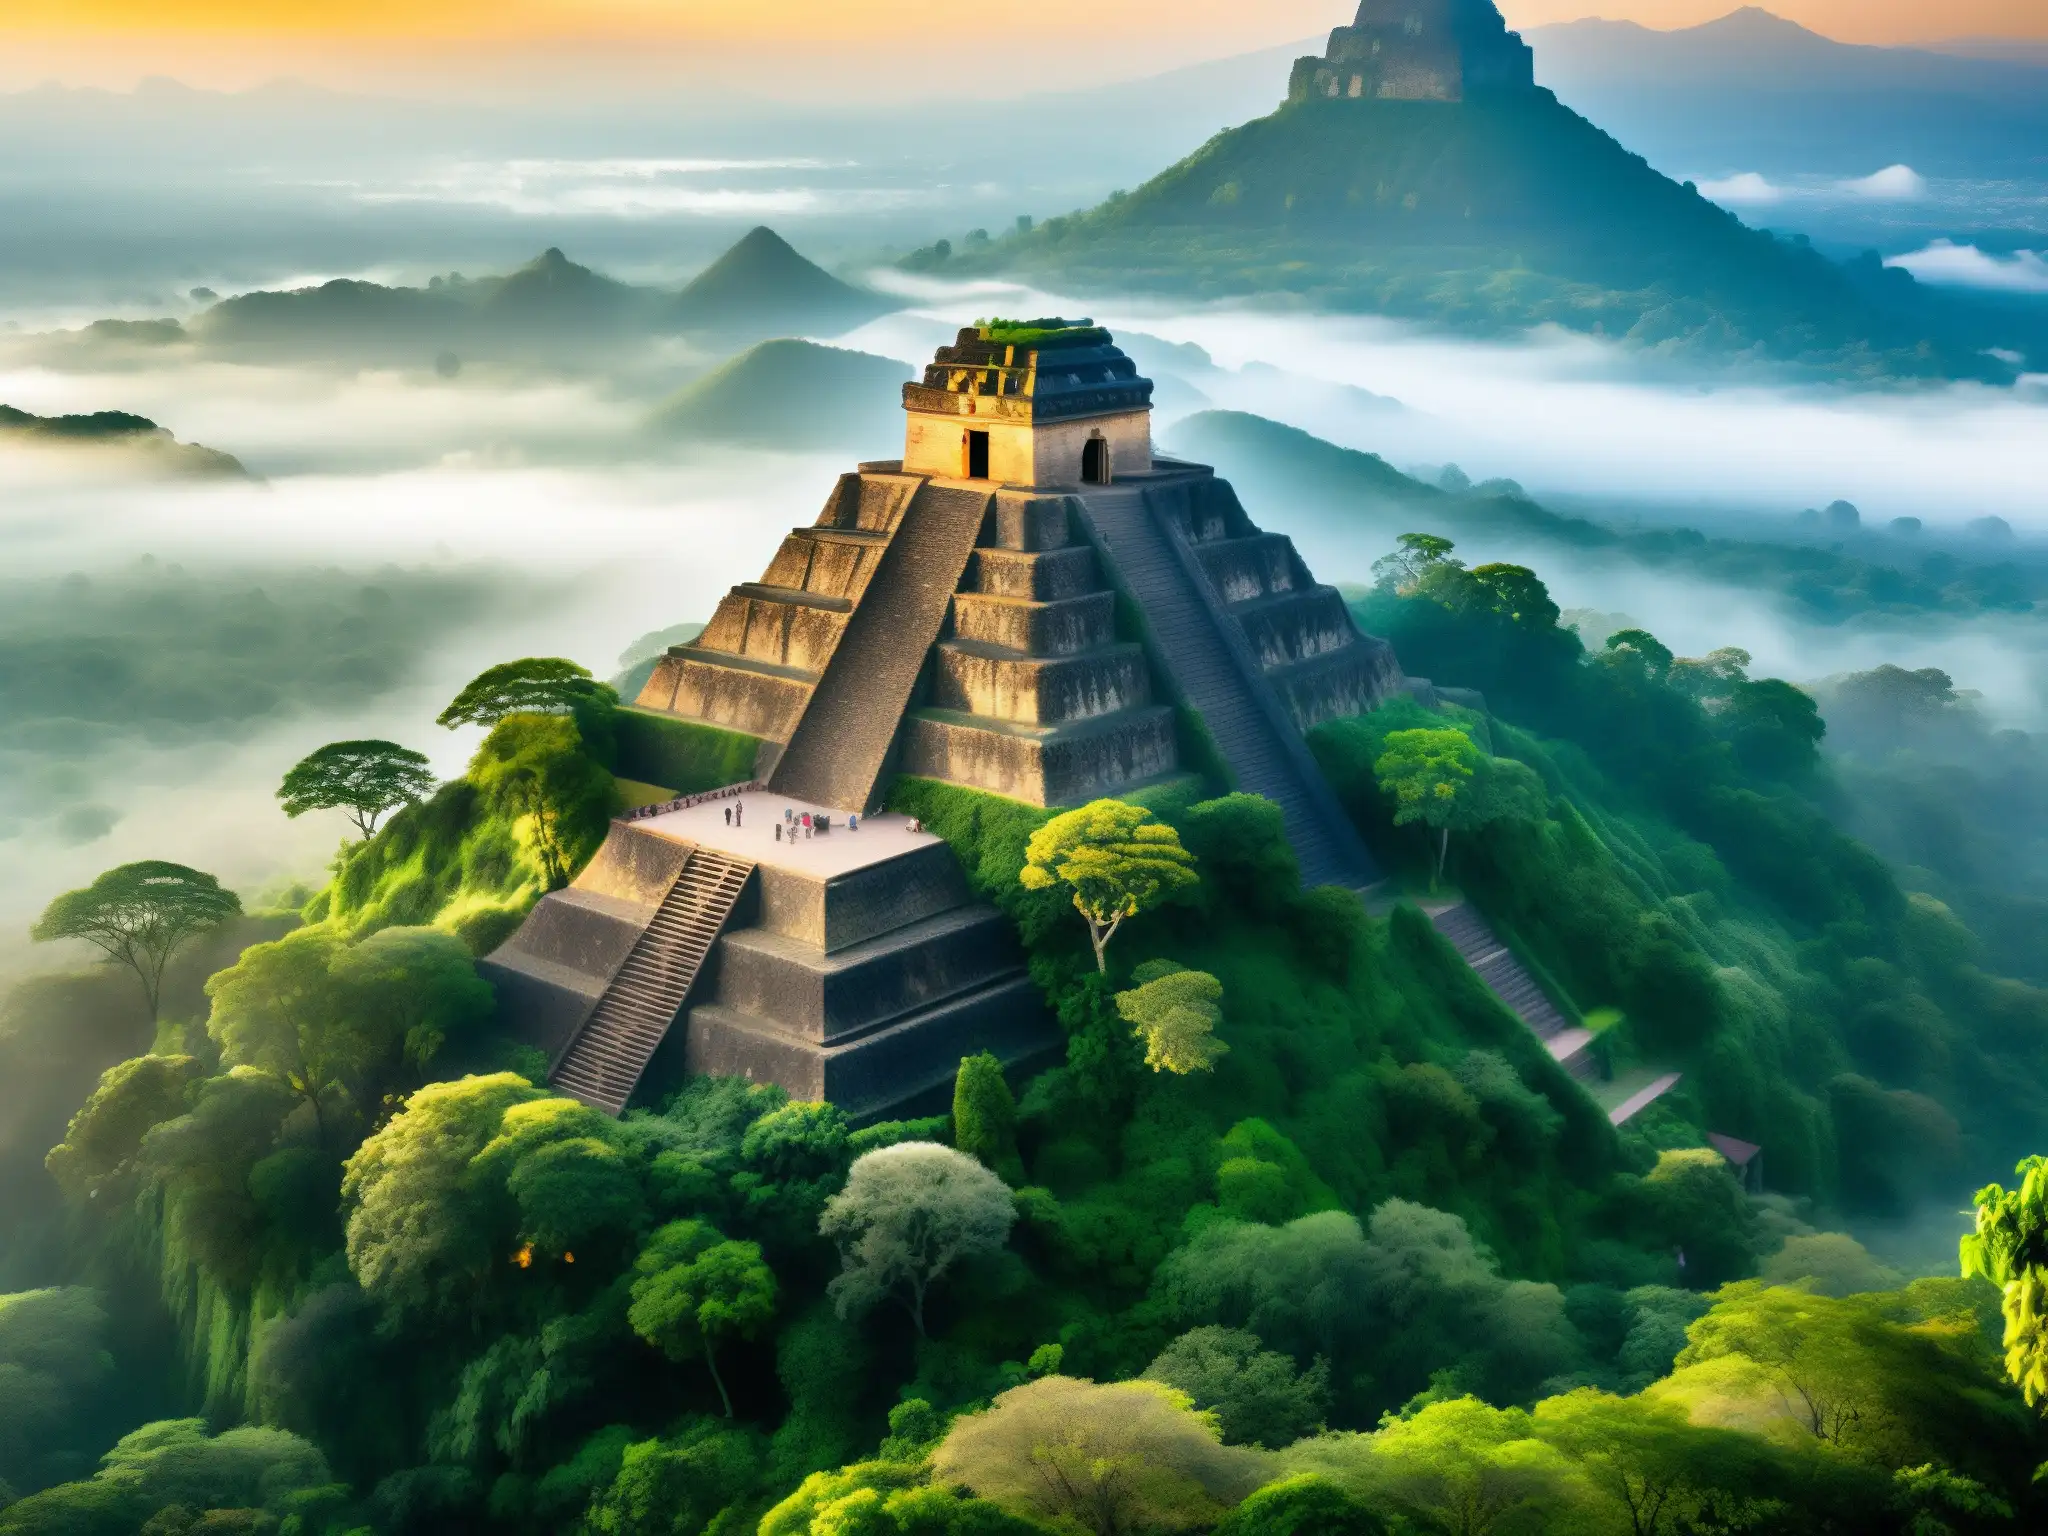 La mística pirámide del Tepozteco envuelta en neblina, con el sol naciente detrás